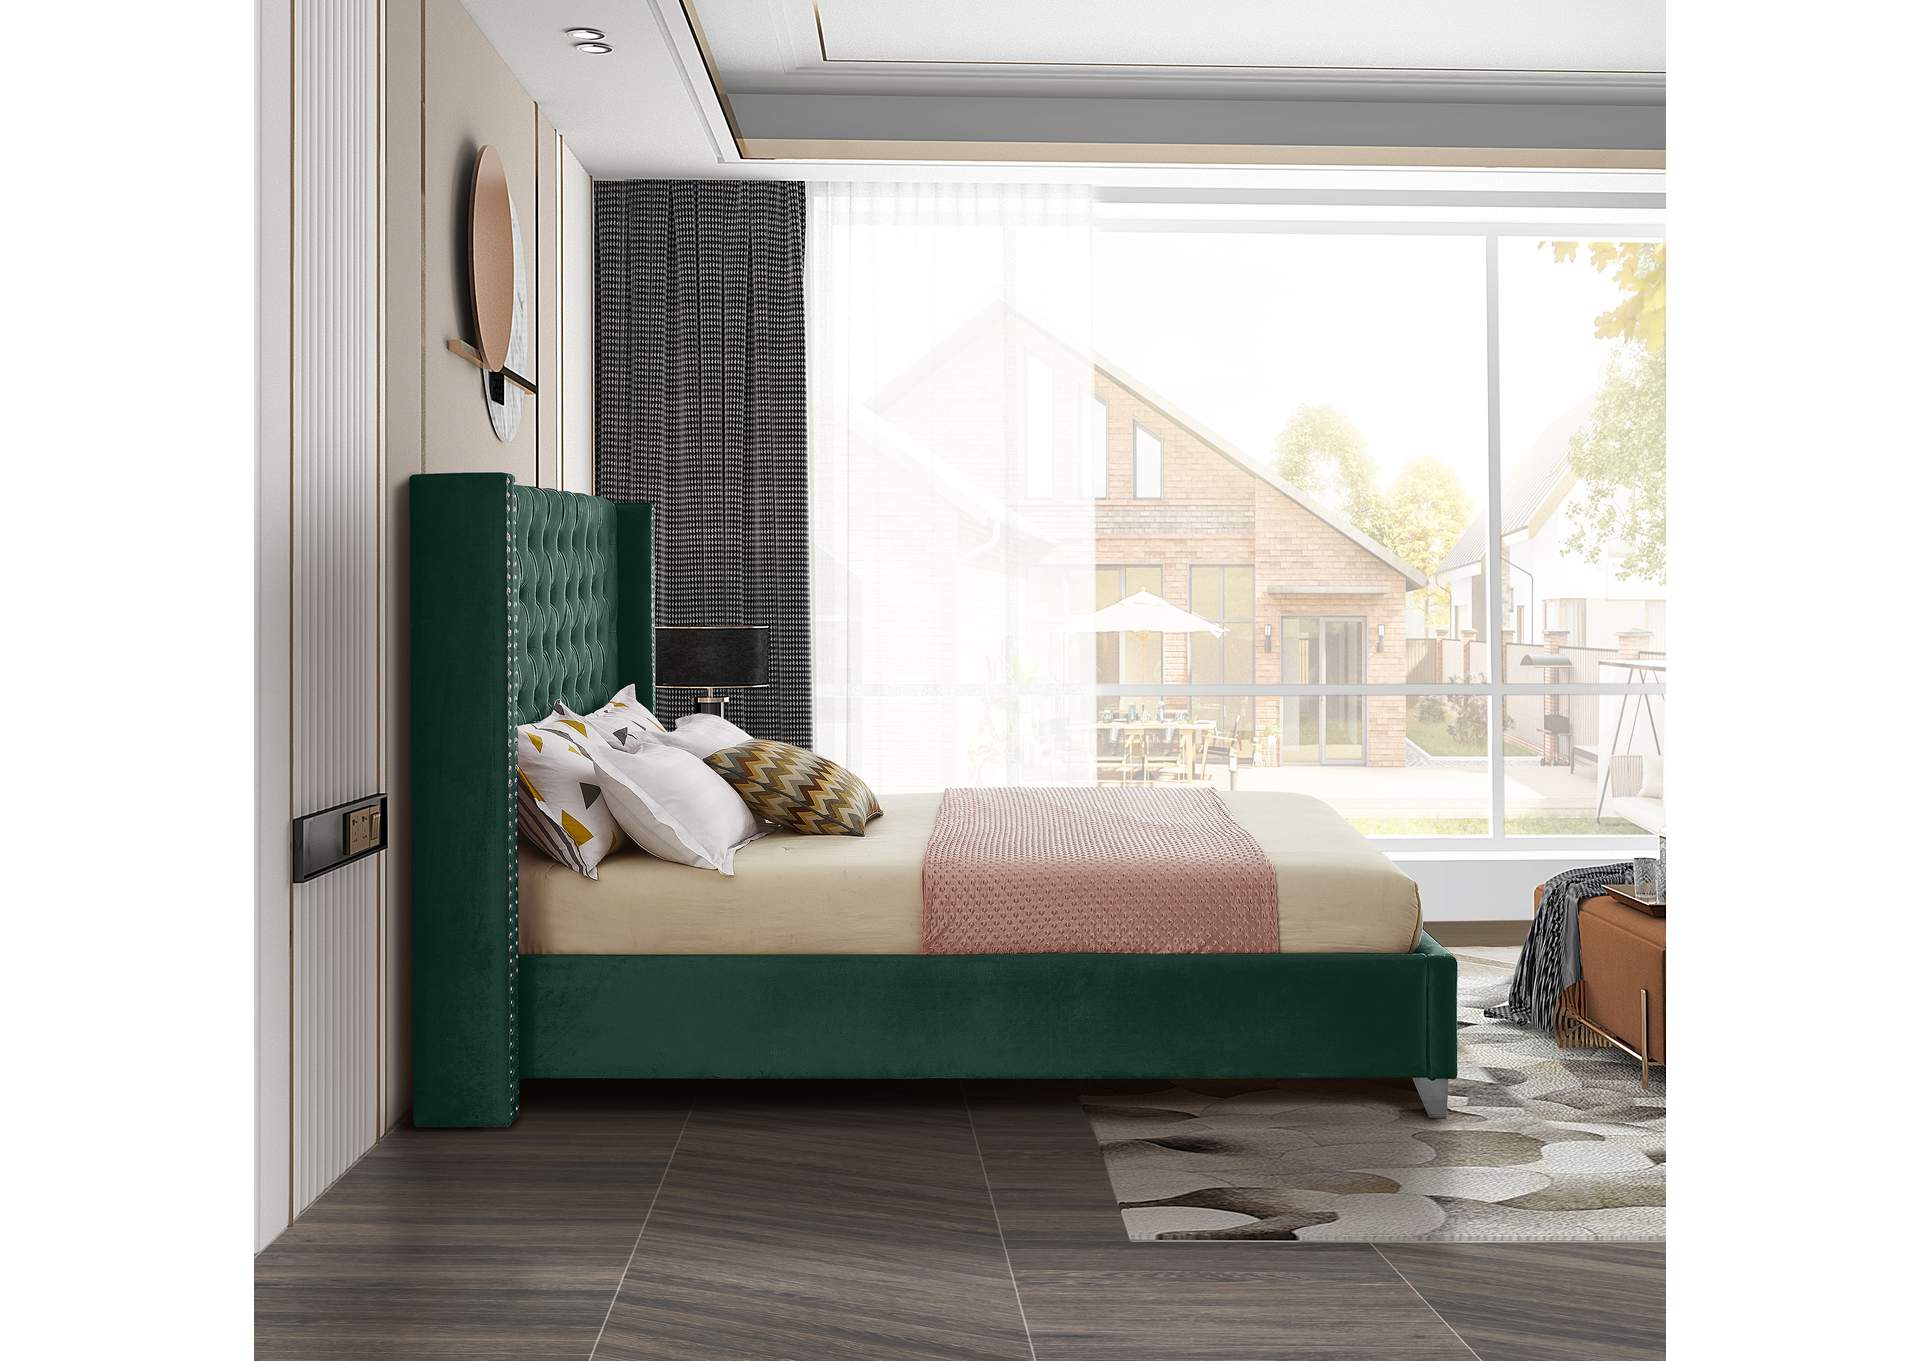 Aiden Green Velvet King Bed,Meridian Furniture